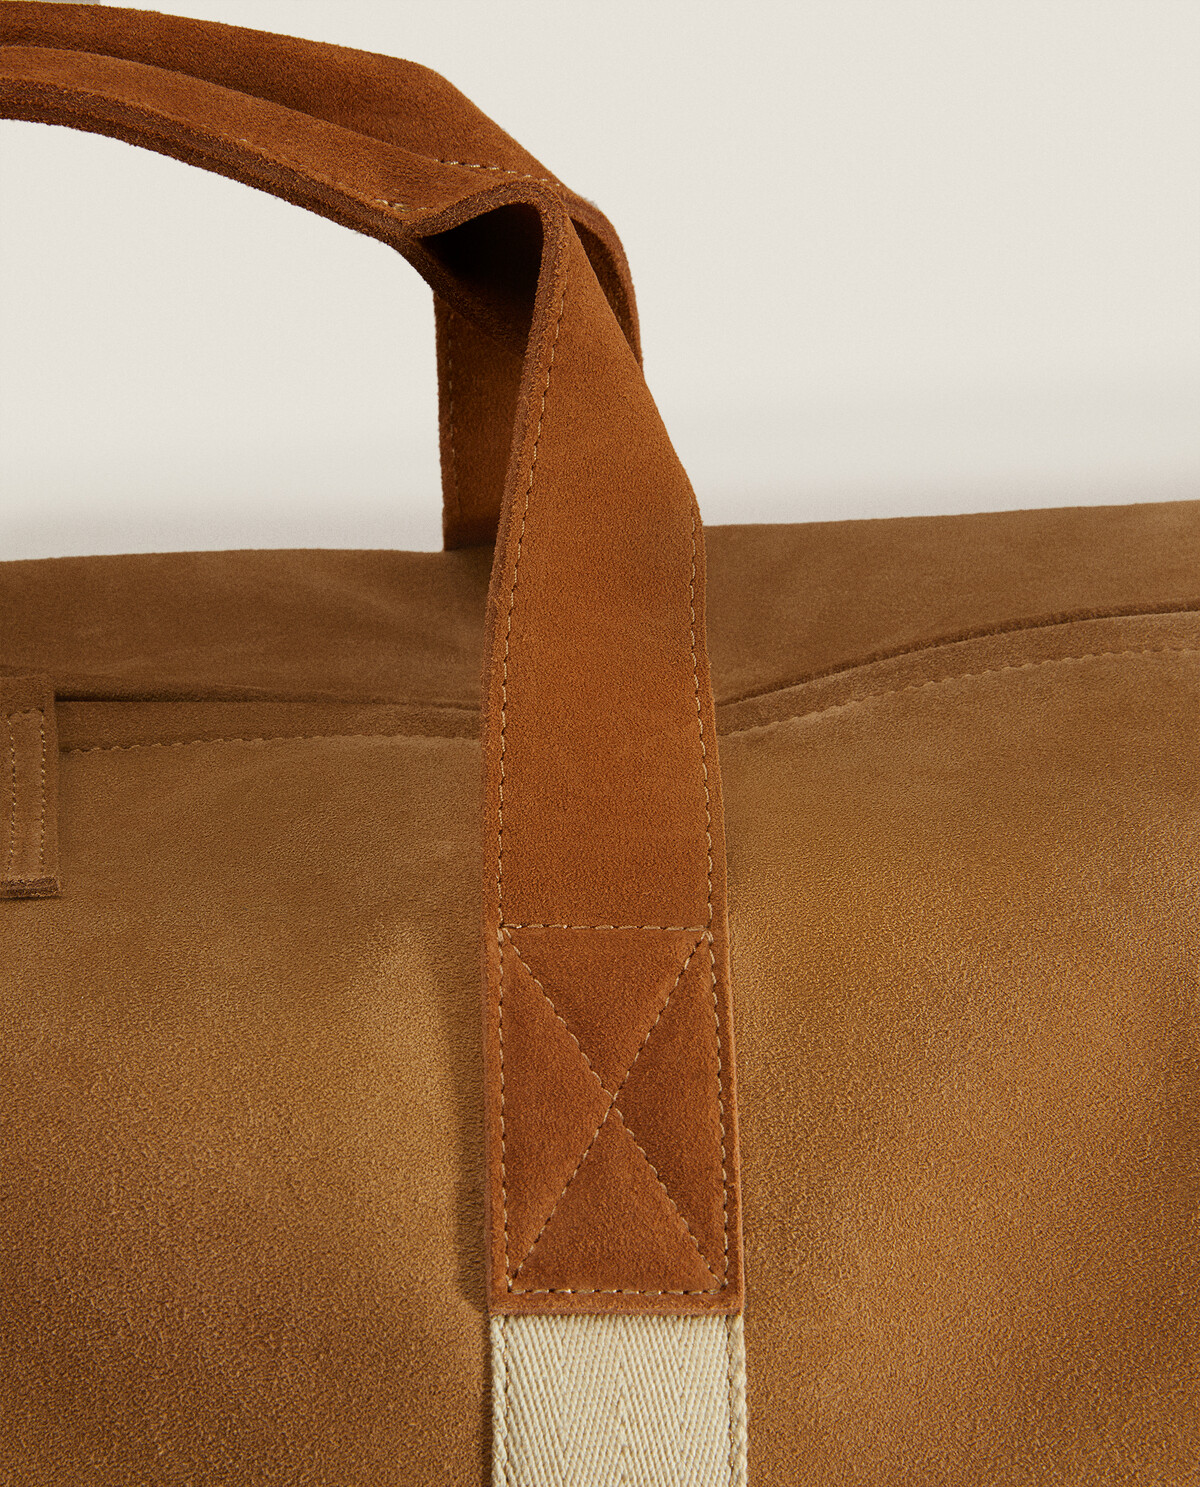 La bolsa térmica de Zara: menos de 20 euros para una vuelta al trabajo  presencial con estilo